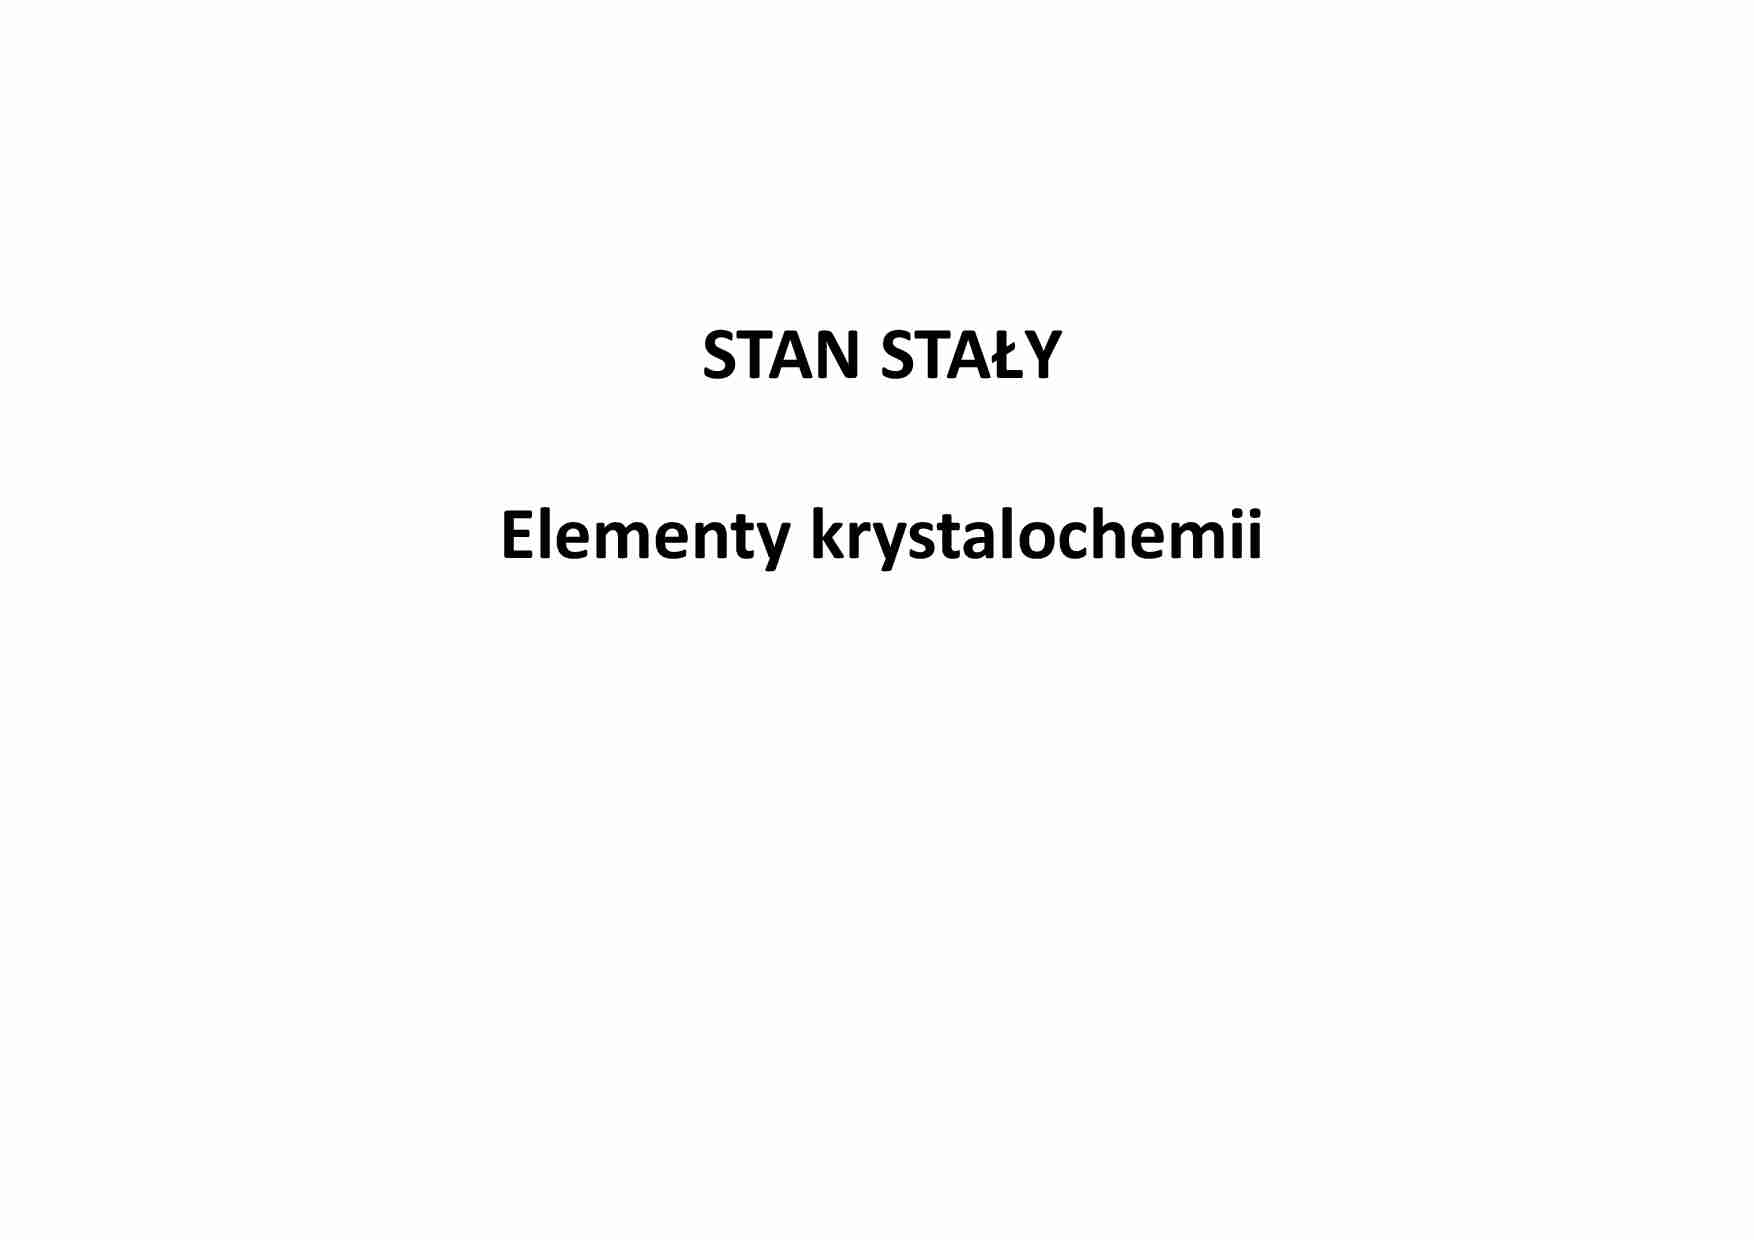 Elementy krystalochemii - stan stały  - strona 1